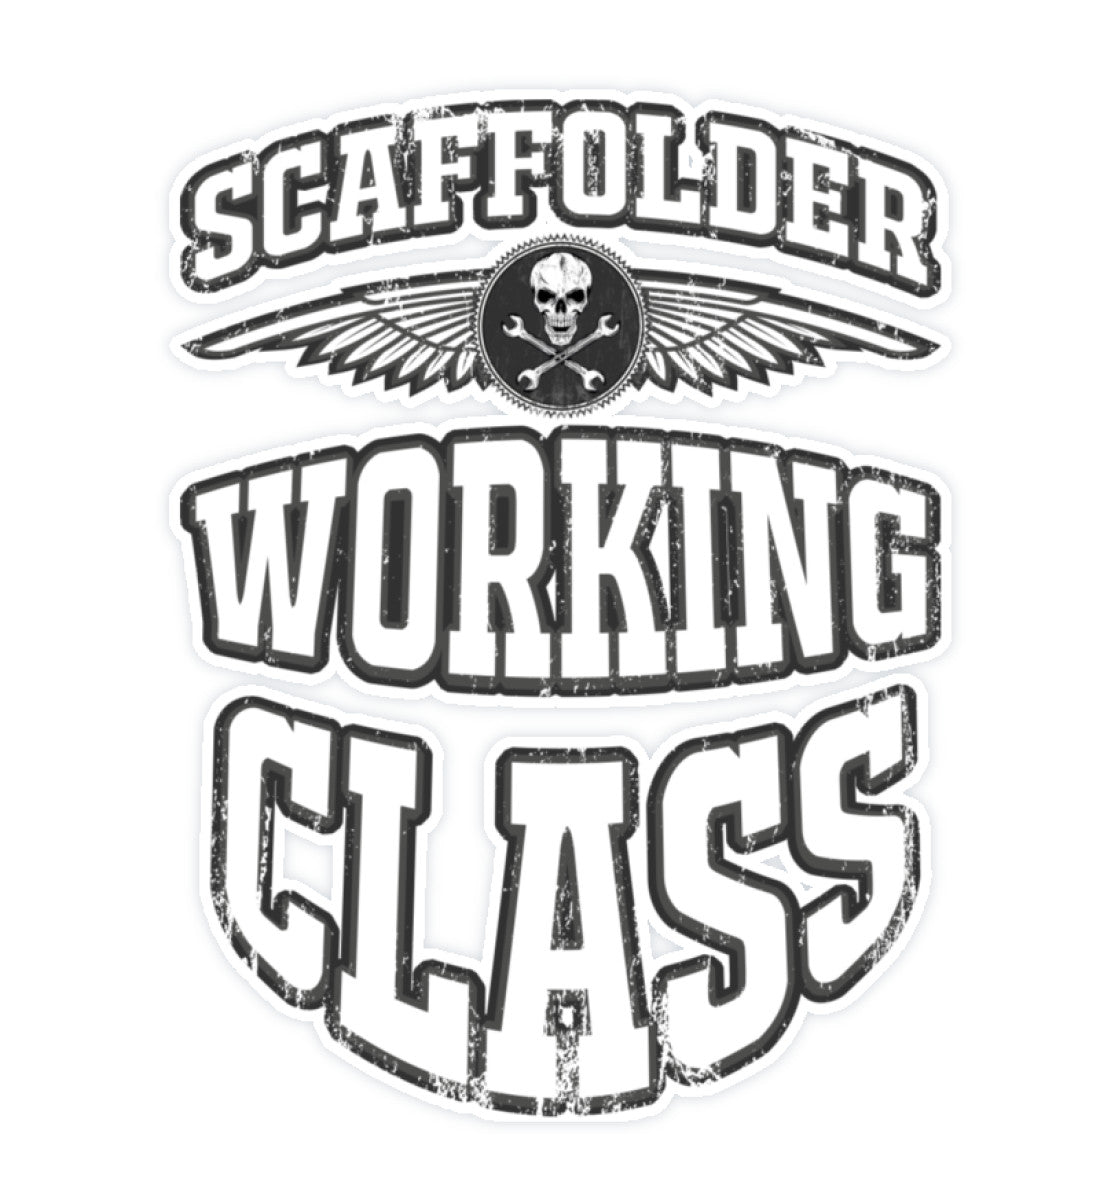 Scaffolder Working Class - Sticker 5x5 €2.95 Gerüstbauer - Shop >>